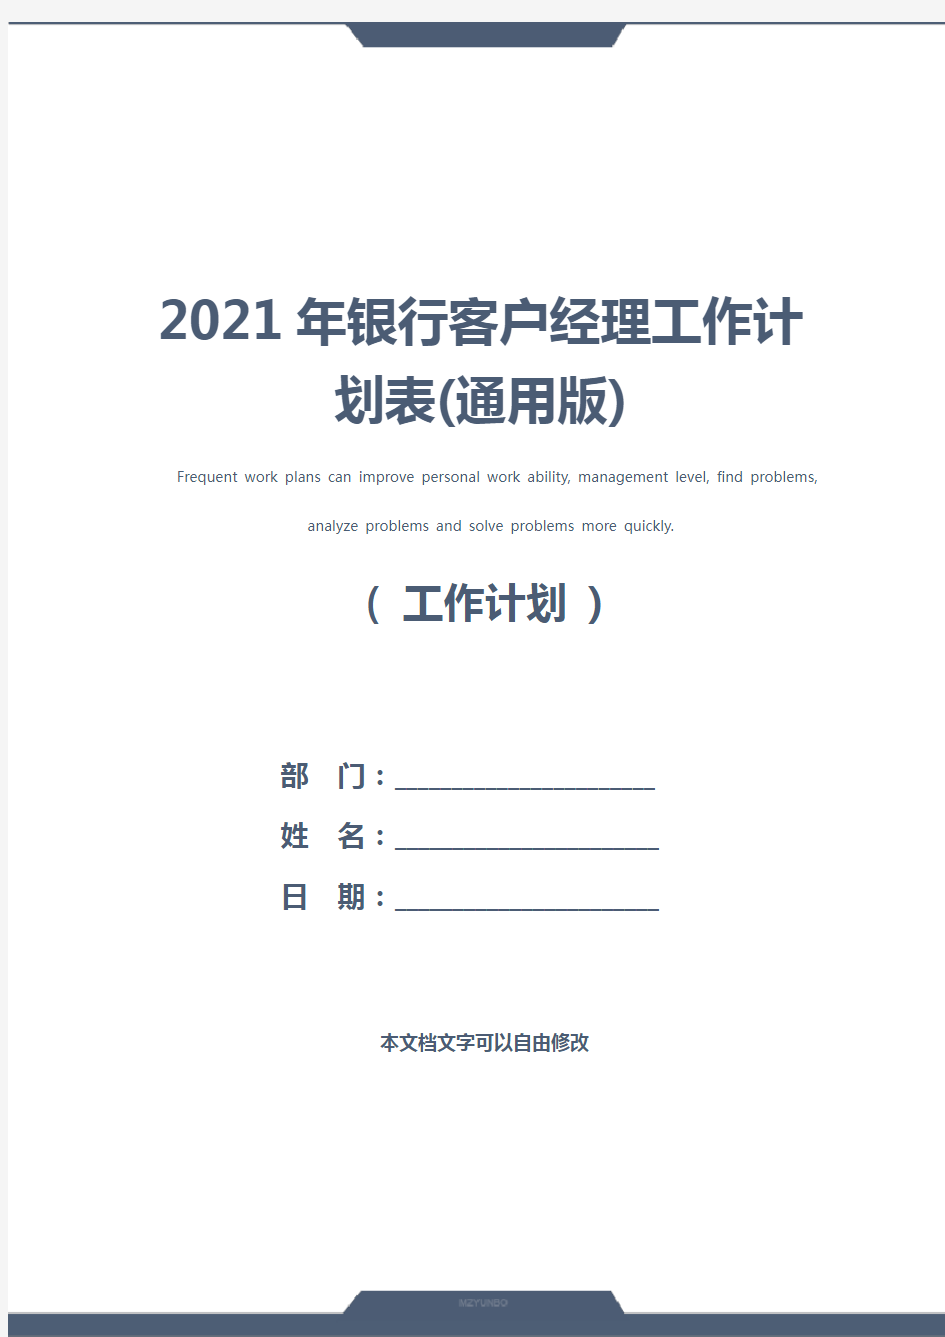 2021年银行客户经理工作计划表(通用版)